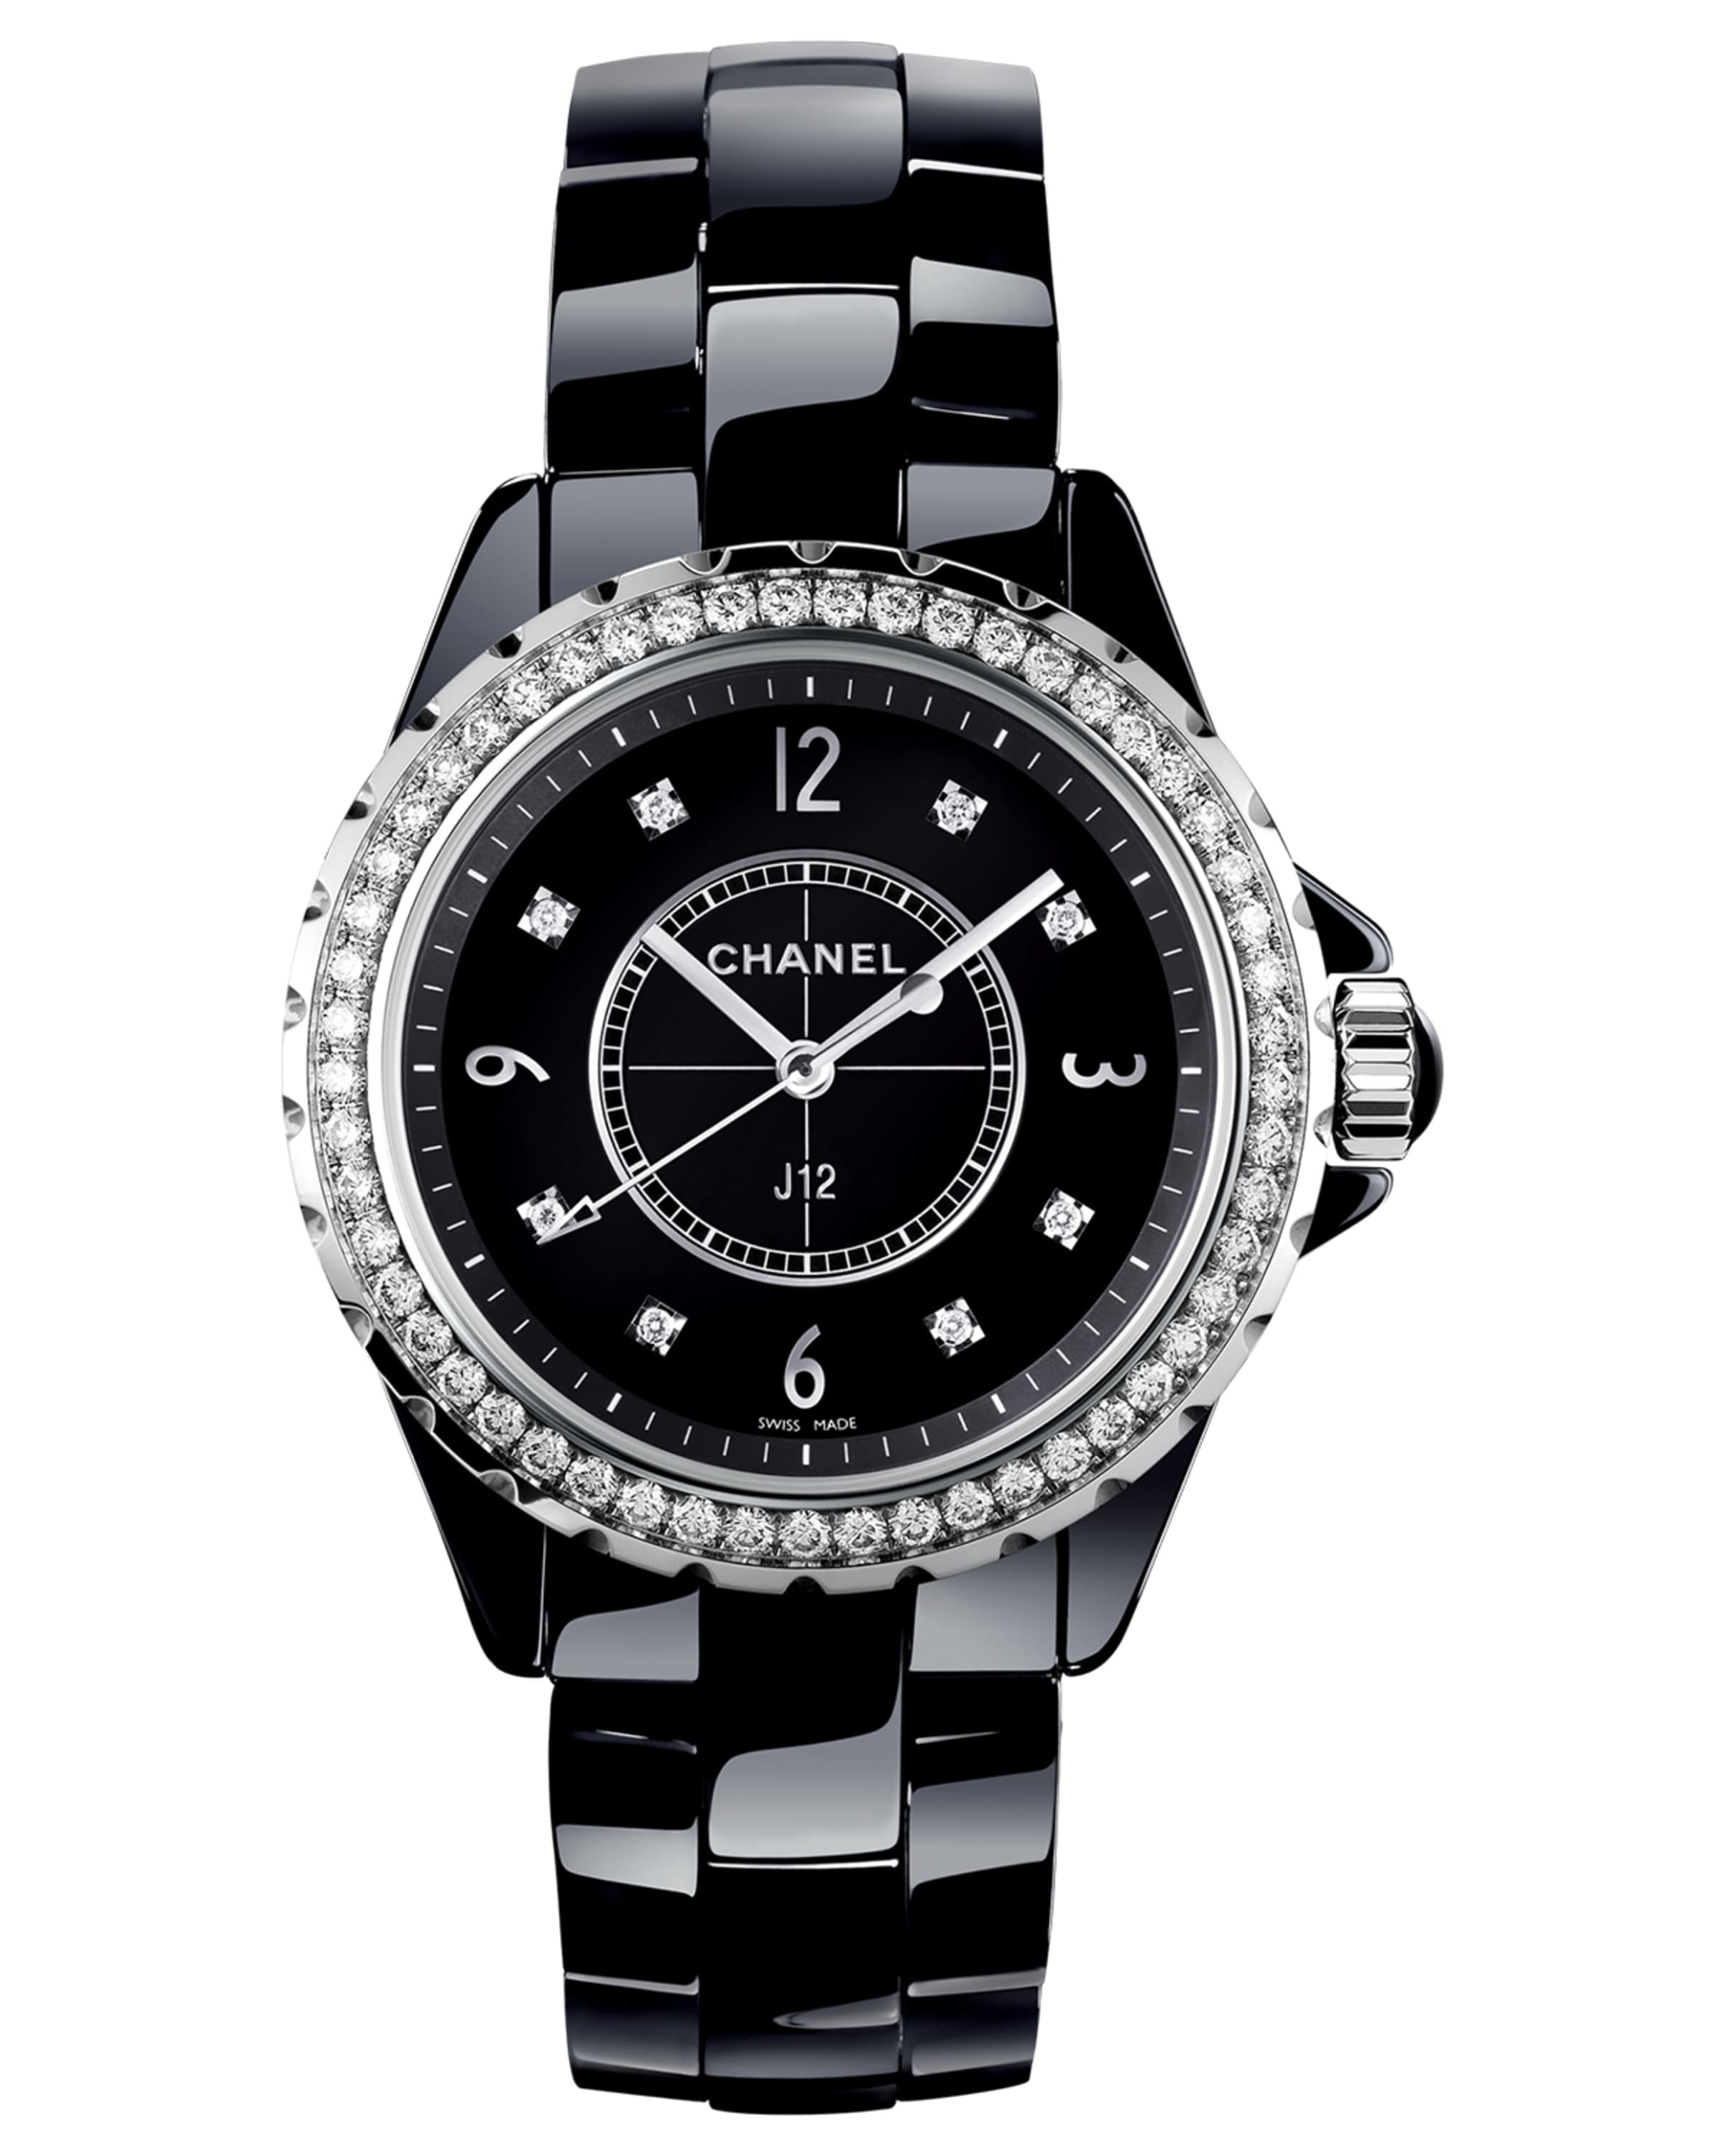 J12 Black 33MM Ceramic Watch with Diamonds - 1